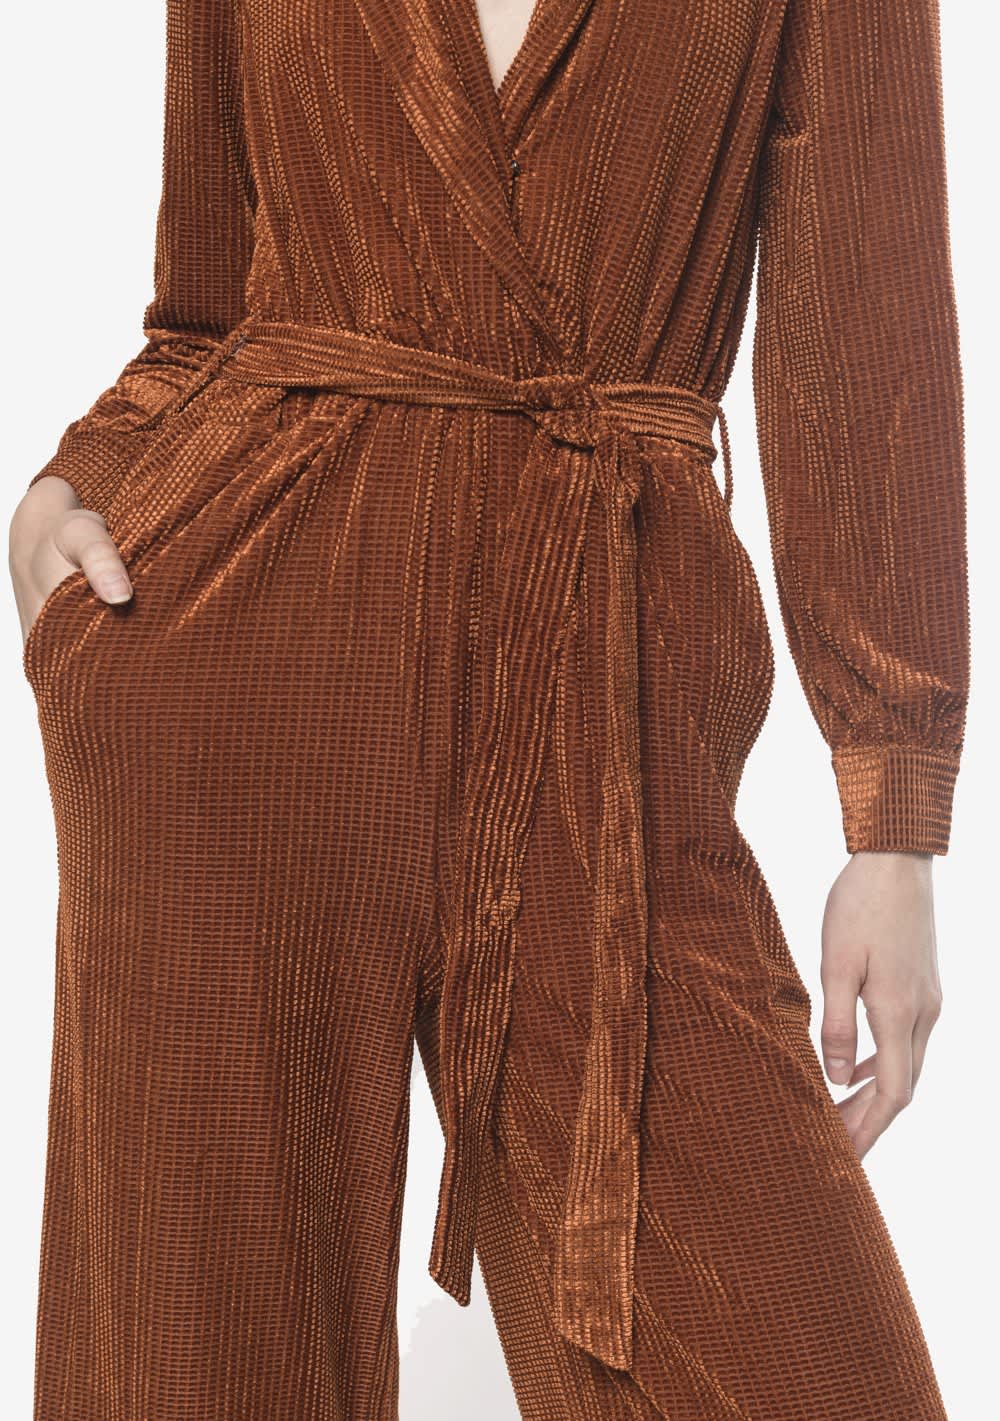 Jumpsuit Color Camello, Escote Frente, Cinta Para Amarrar Y Resorte En Cintura, Boton En Puños. 95%Polyester 5%Elastico.